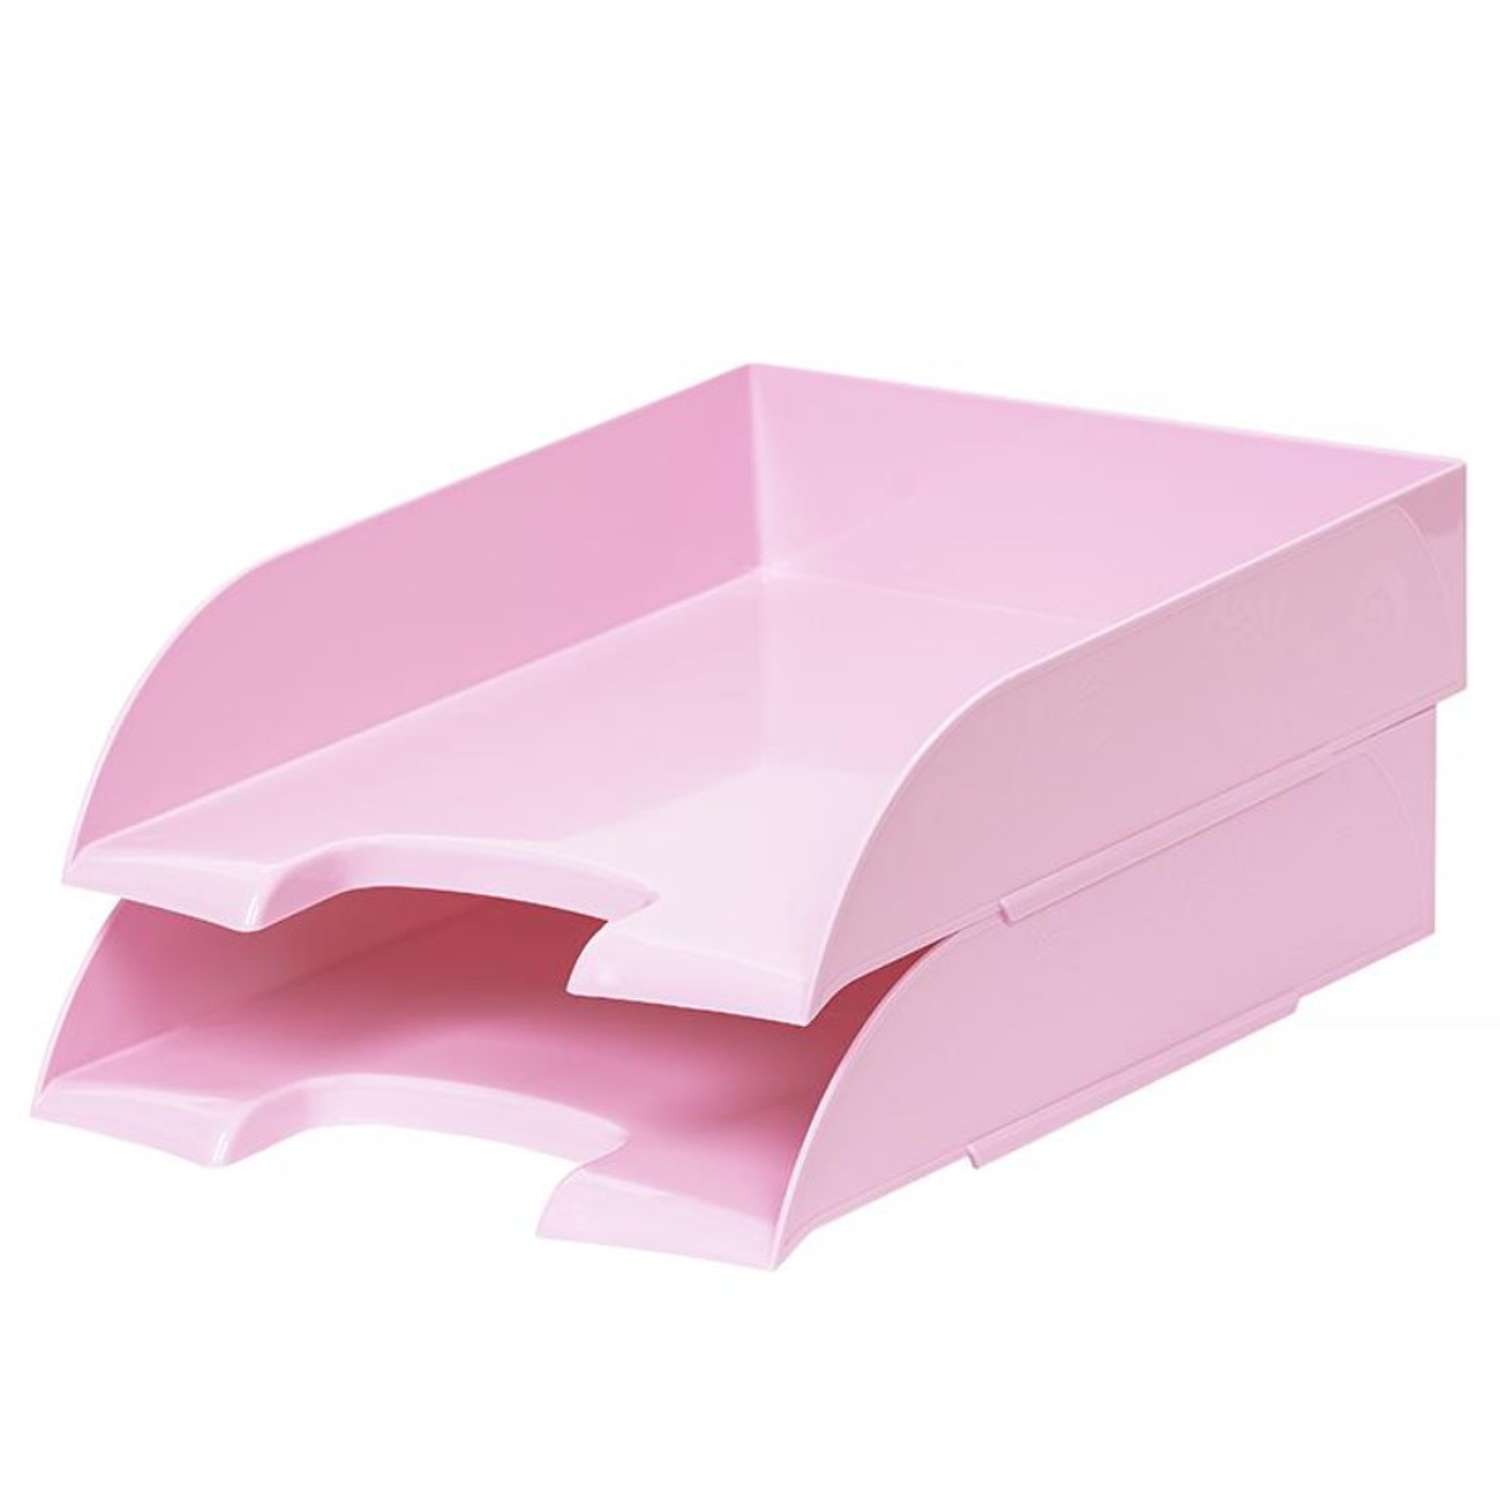 Лоток Attache для бумаг Selection Flamingo прозрачный розовый 1 шт - фото 2